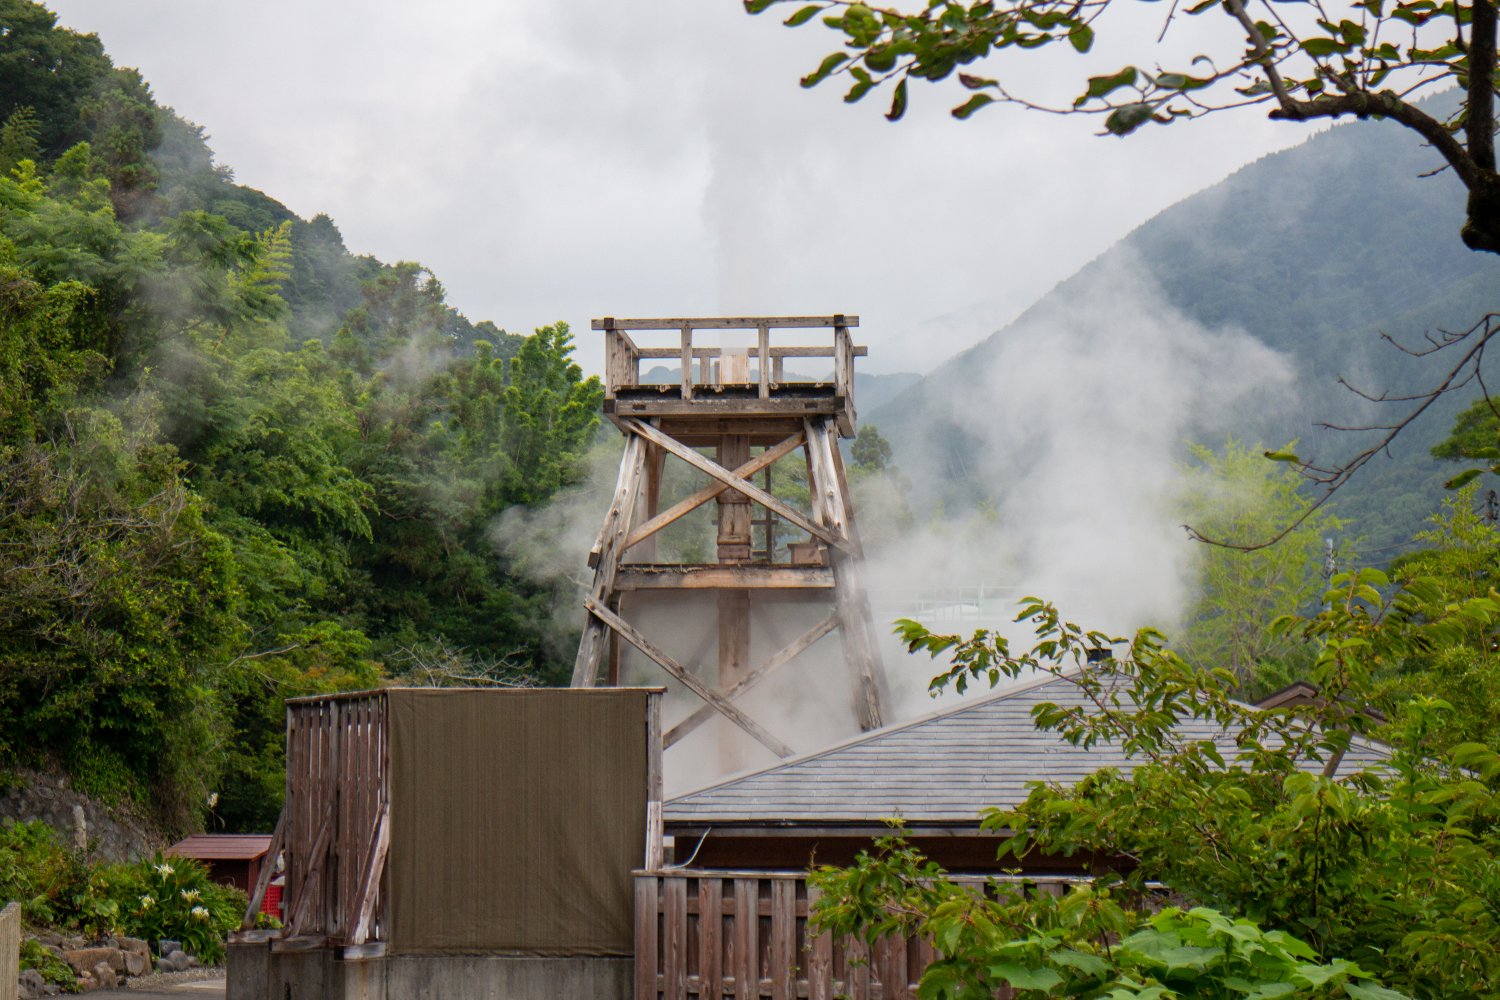 Im Mineonsen Daifunto Park spuckt regelmäßig eine heiße Quelle bis zu 30 Meter hoch.